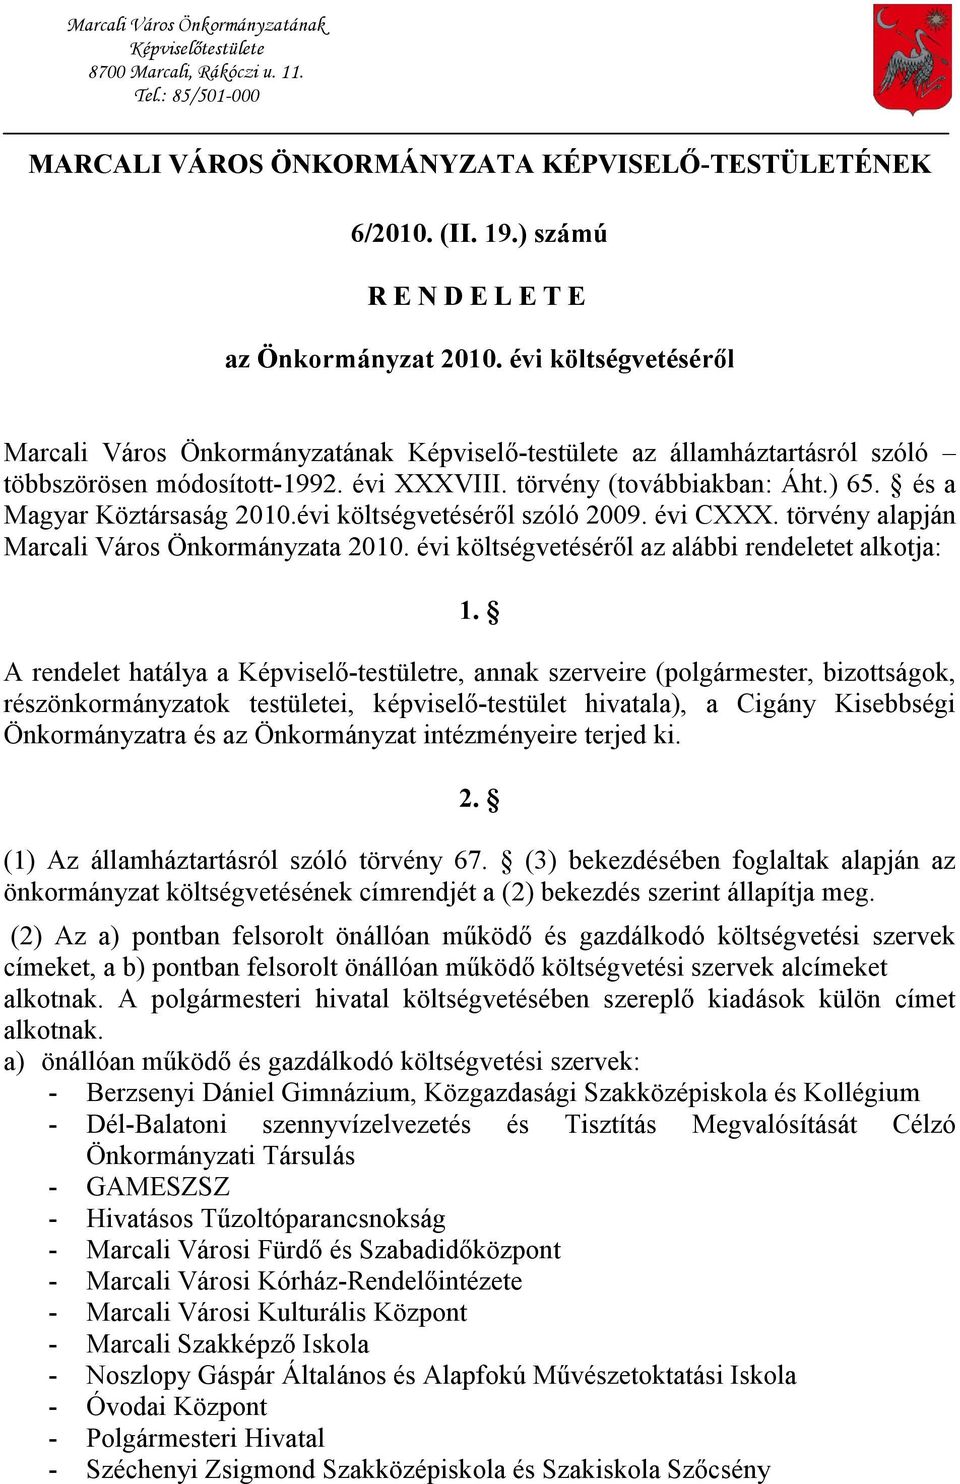 törvény (továbbiakban: Áht.) 65. és a Magyar Köztársaság 2010.évi költségvetéséről szóló 2009. évi CXXX. törvény alapján Marcali Város Önkormányzata 2010.